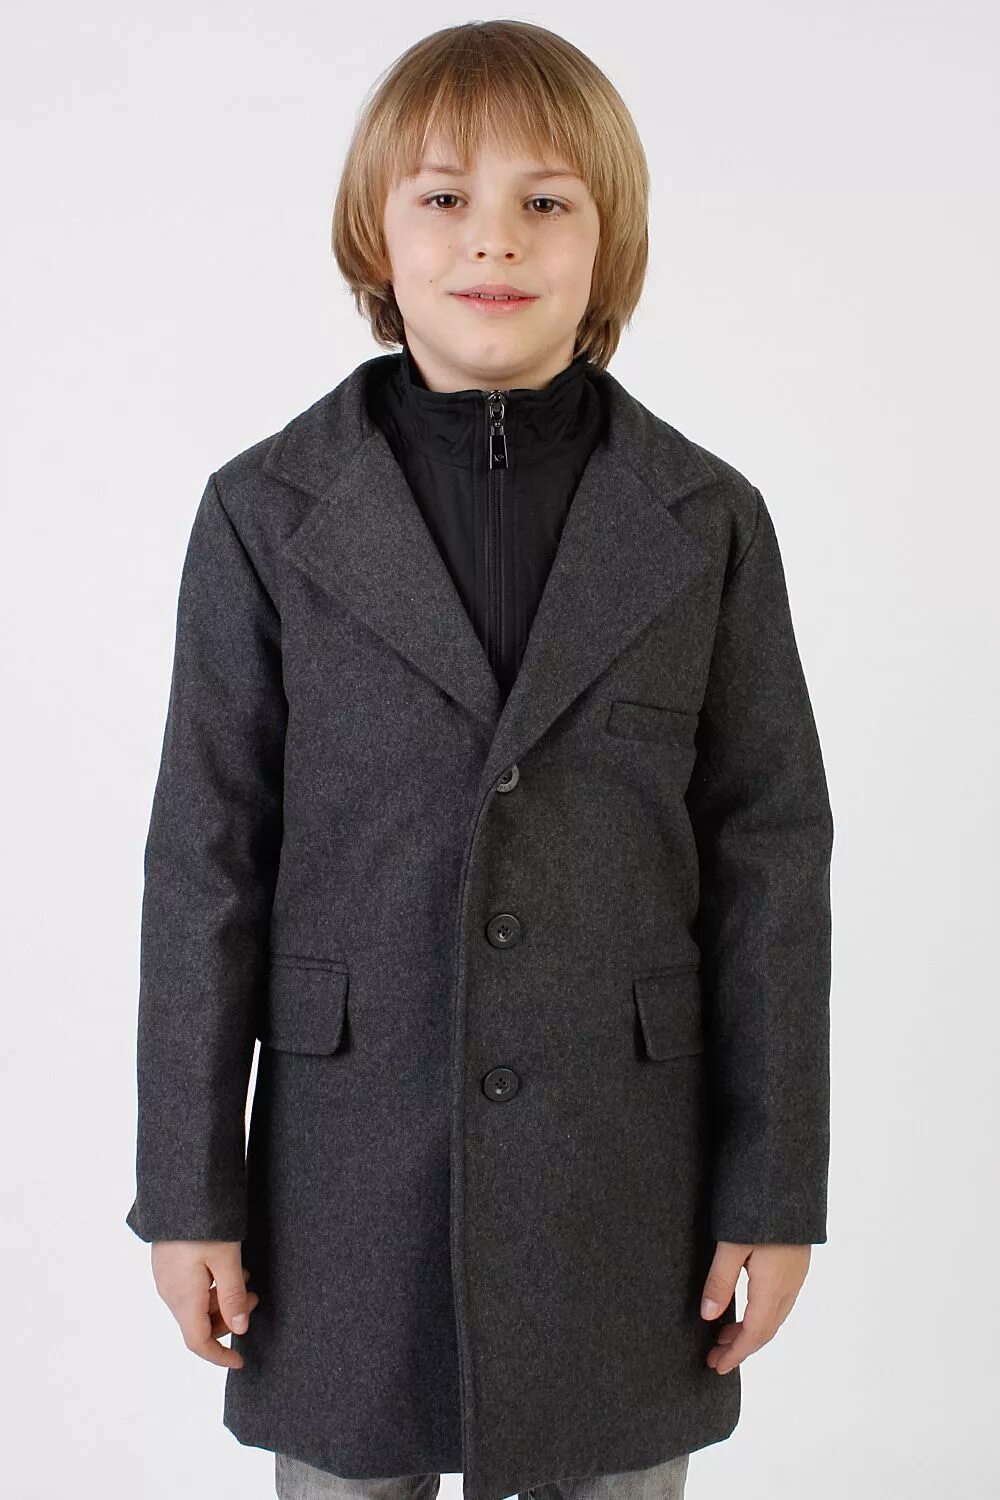 Пальто для подростка мальчика. Пальто Нобле пипл для мальчиков. Gulliver пальто для мальчика 222gsbv4503. Пальто шерстяное Гулливер. Noble people пальто для мальчика.